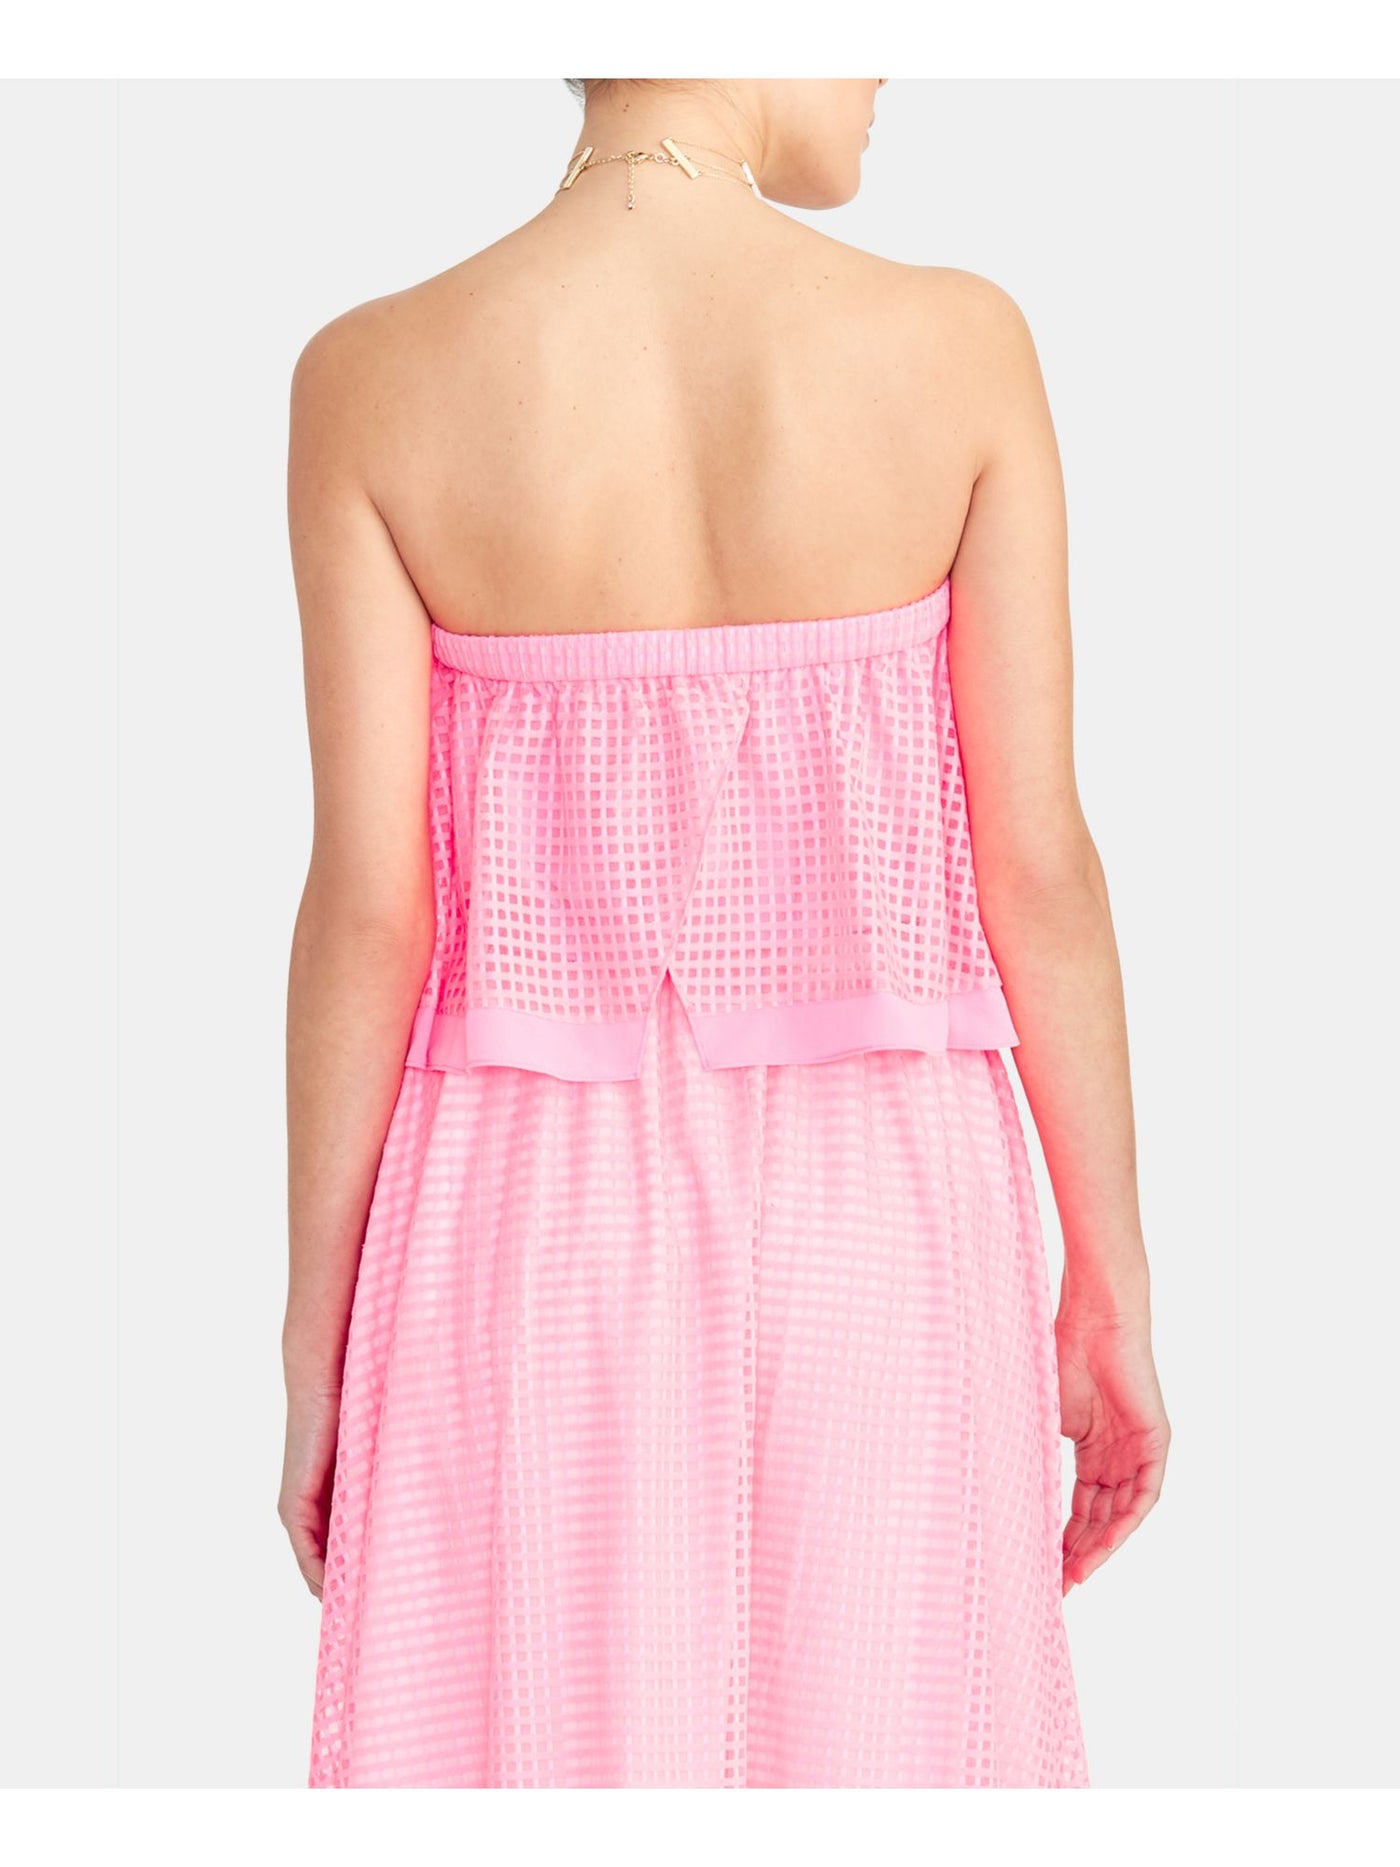 RACHEL ROY Womens Pink Sleeveless Strapless Crop Top XL